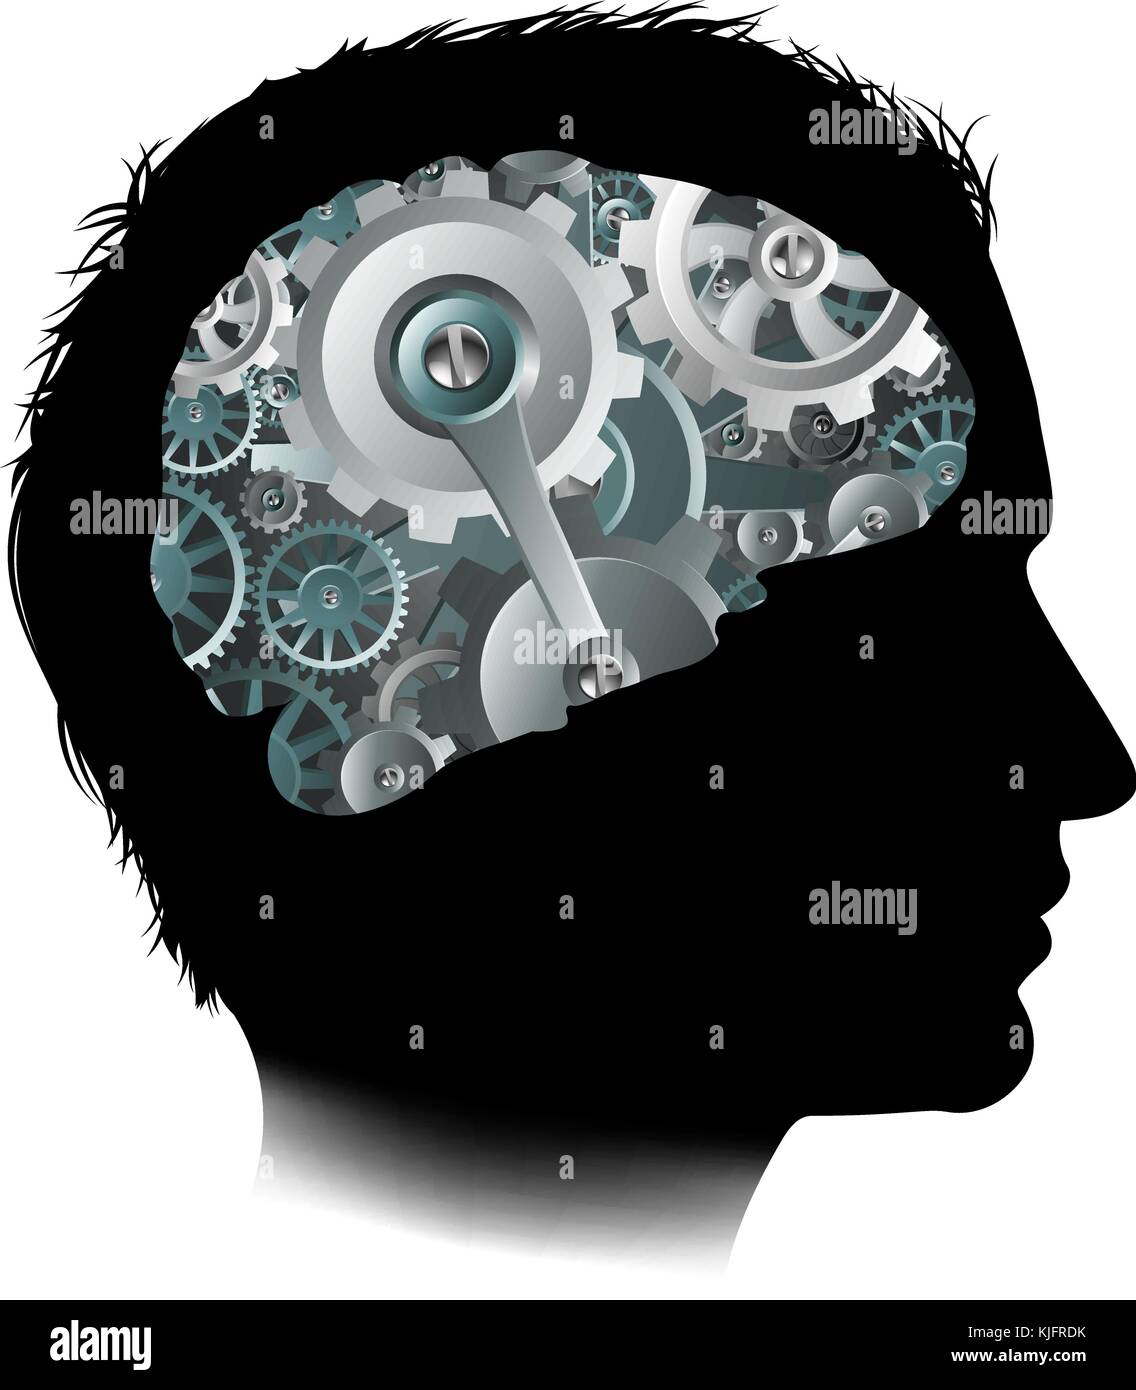 Macchine lavorazione ingranaggi Cogs Brain Man Concept Illustrazione Vettoriale